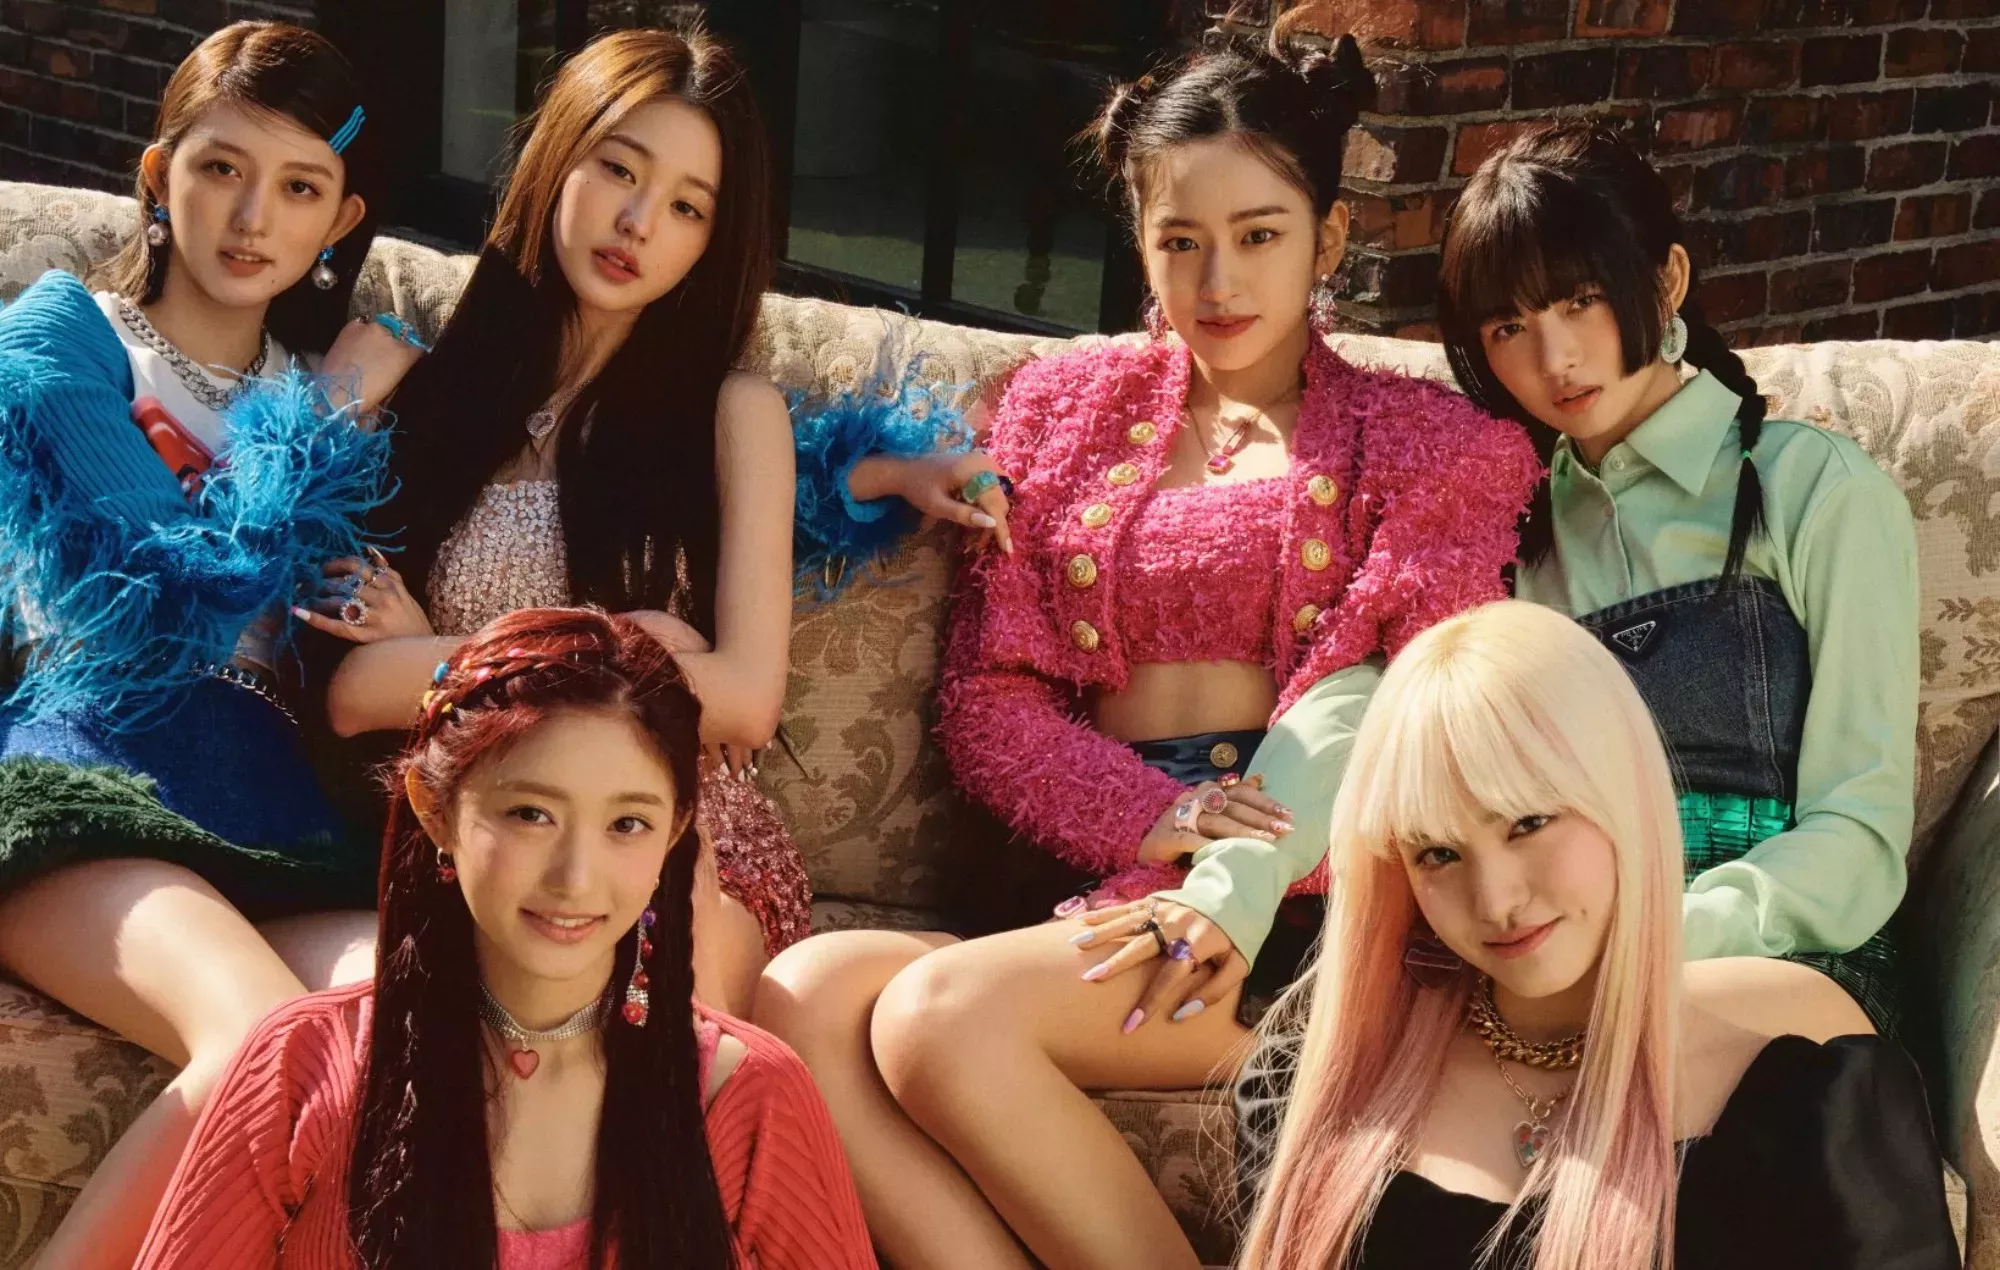 El grupo de chicas novatas de K-pop IVE regresa con el lujoso vídeo musical 